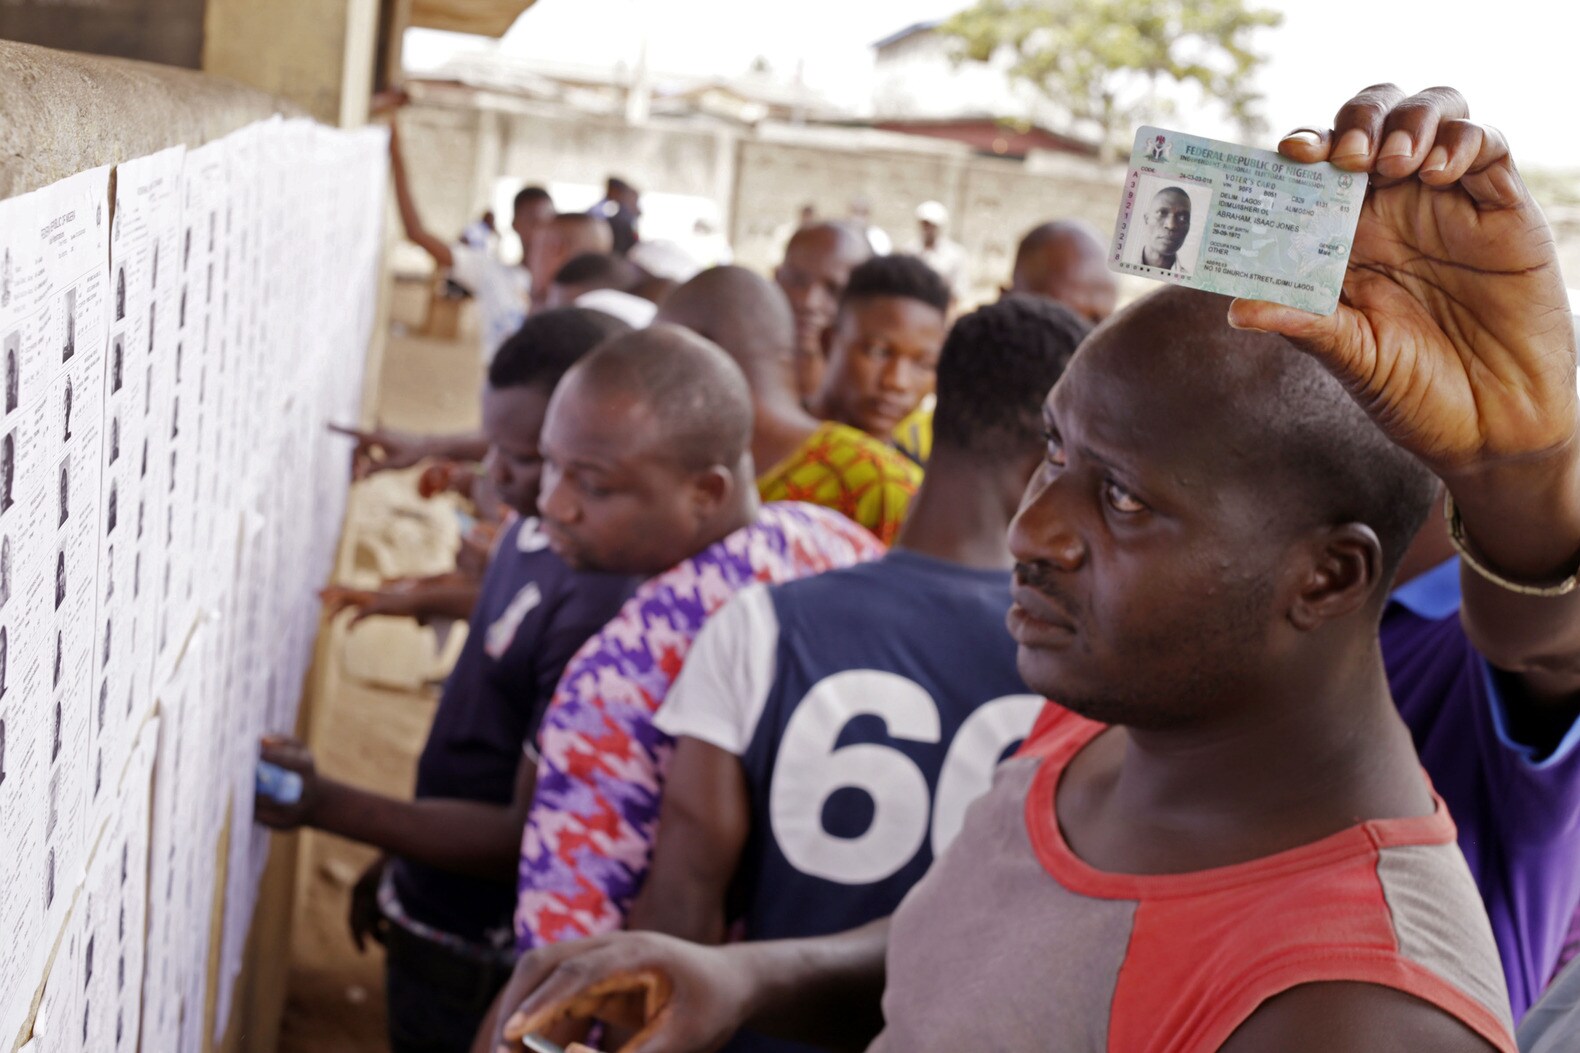 Meer over de verkiezingen in Nigeria en Boko Haram